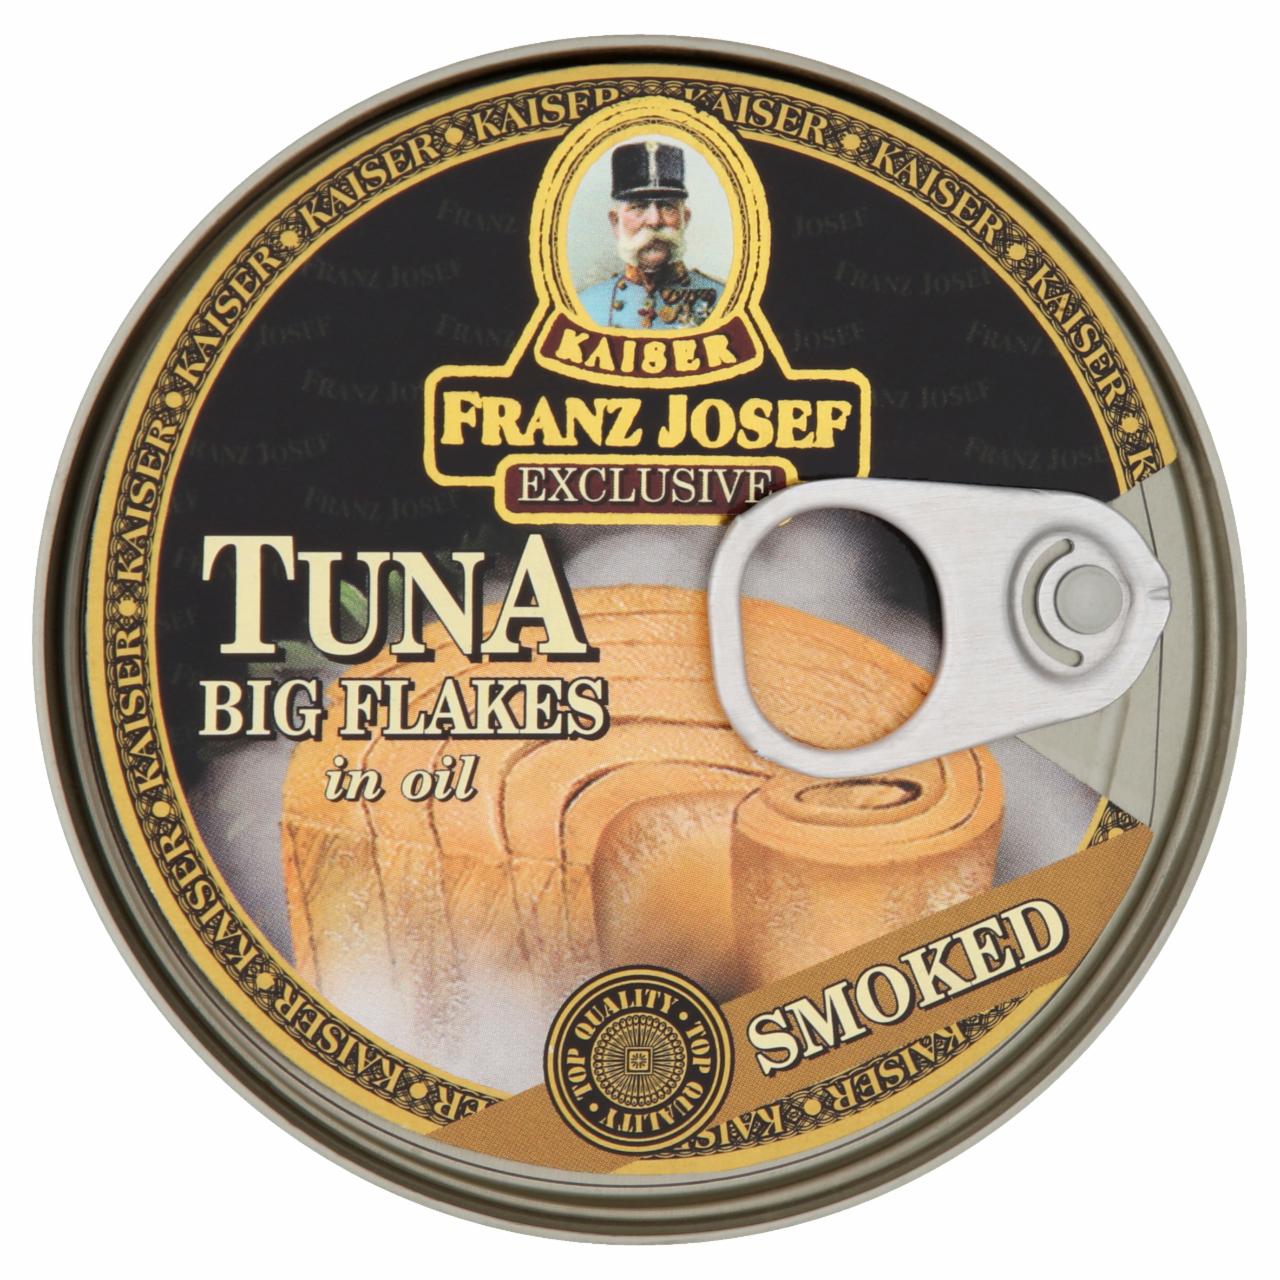 Képek - Kaiser Franz Josef tonhaldarabok napraforgóolajban füstölt ízesítéssel 170 g